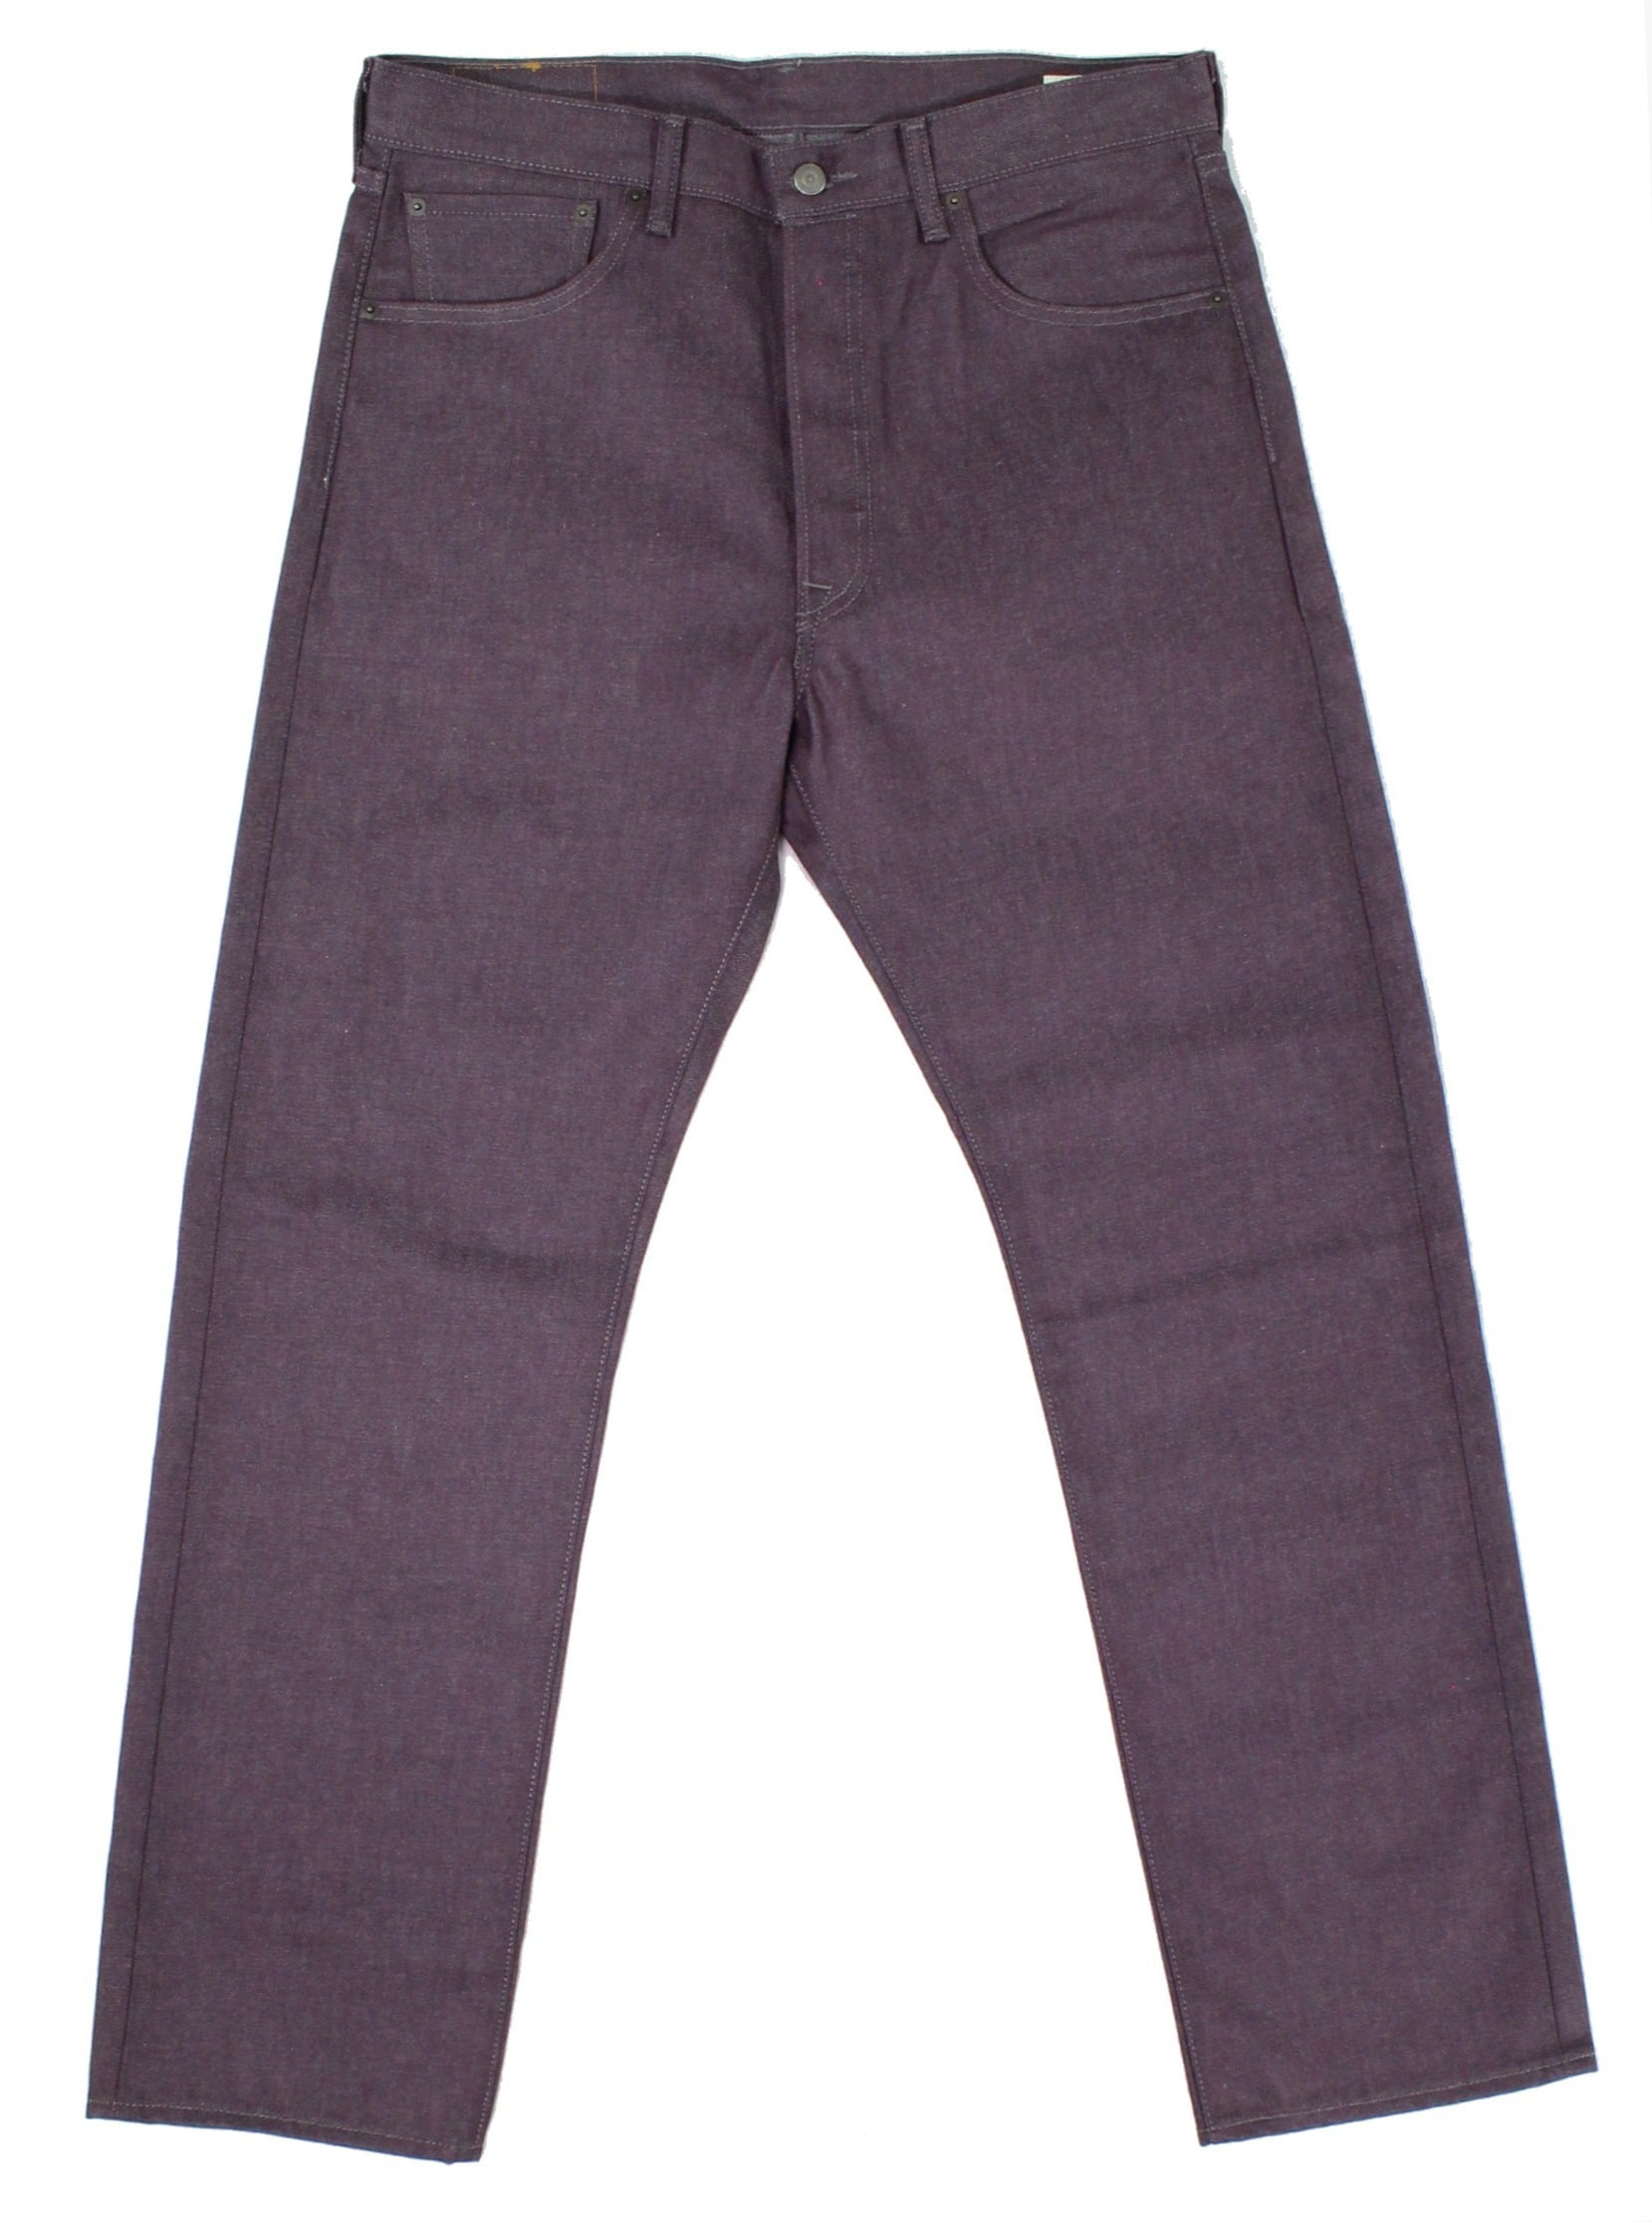 Levi's Mens 501 Regular Fit Jeans, Purple, 34W x 30L 